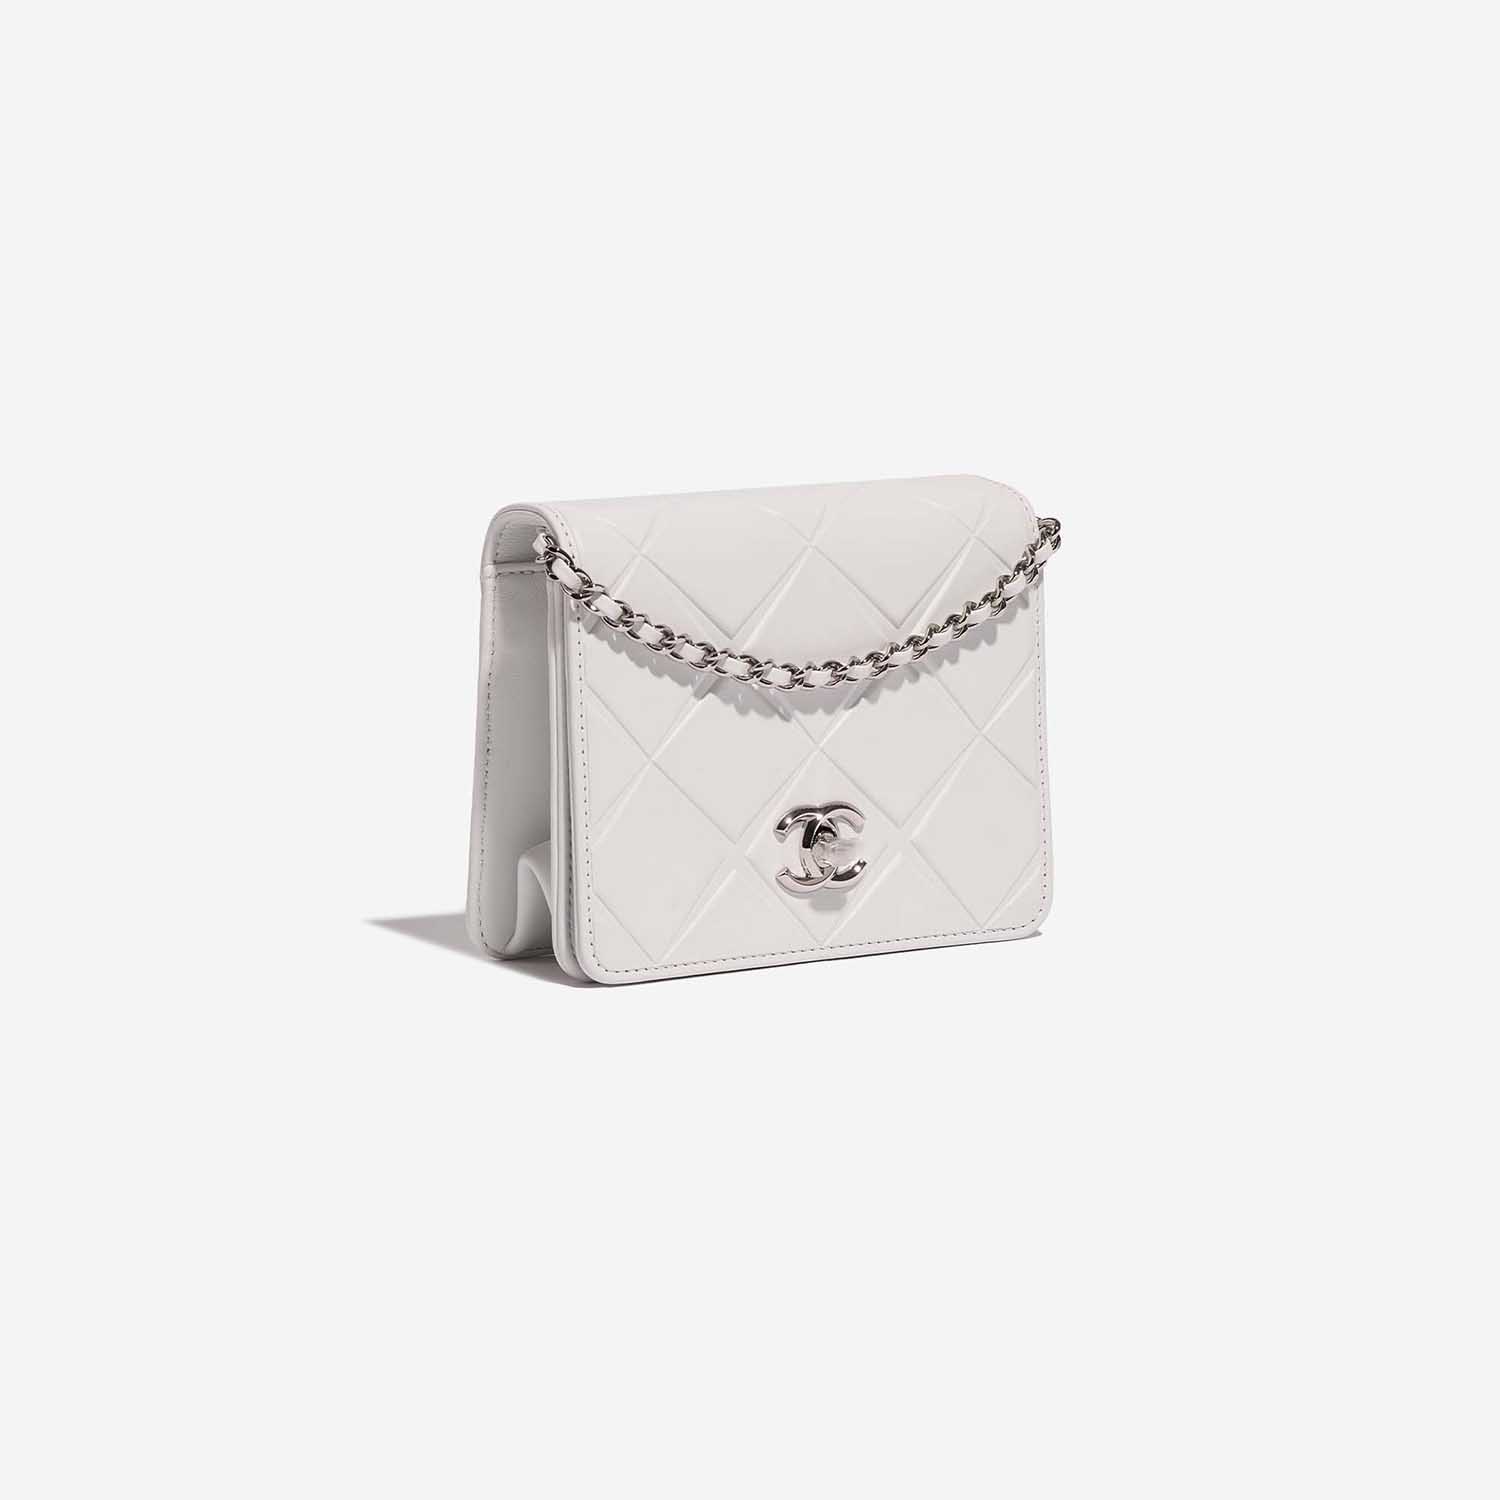 Chanel Timeless MiniFlap White Side Front | Verkaufen Sie Ihre Designer-Tasche auf Saclab.com